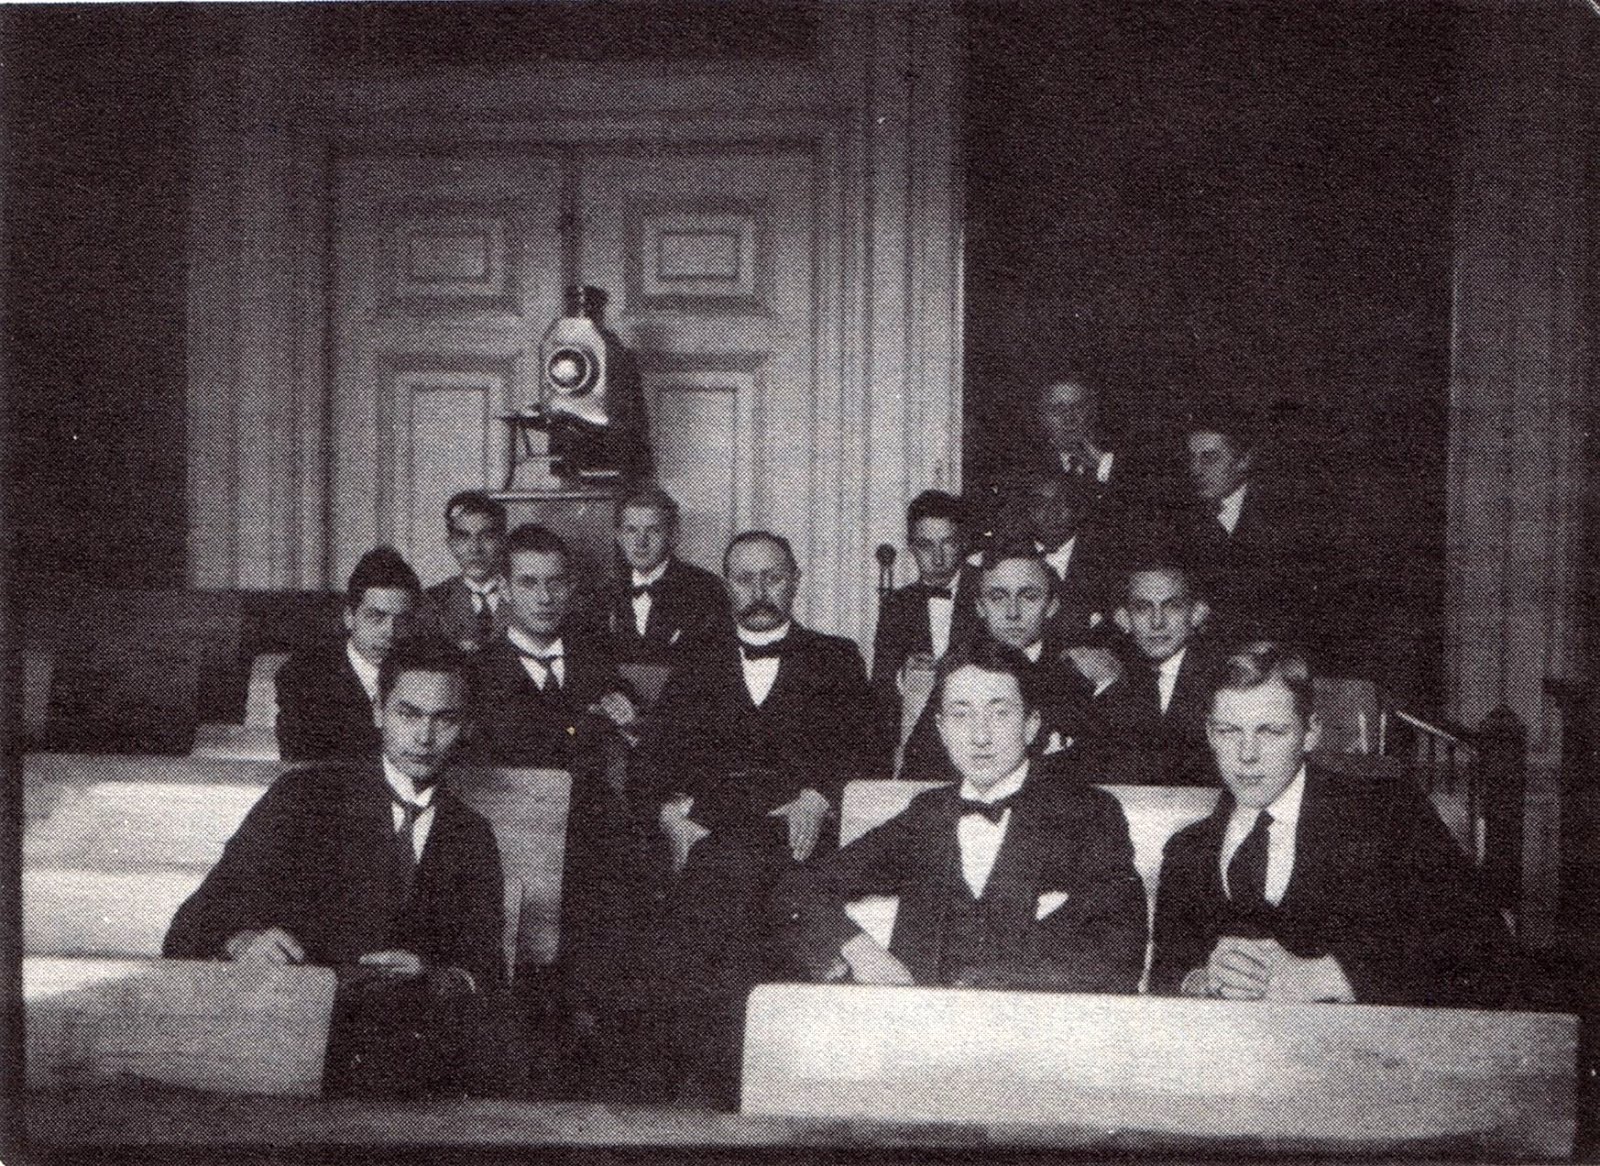 Klassenfoto van rond 1920